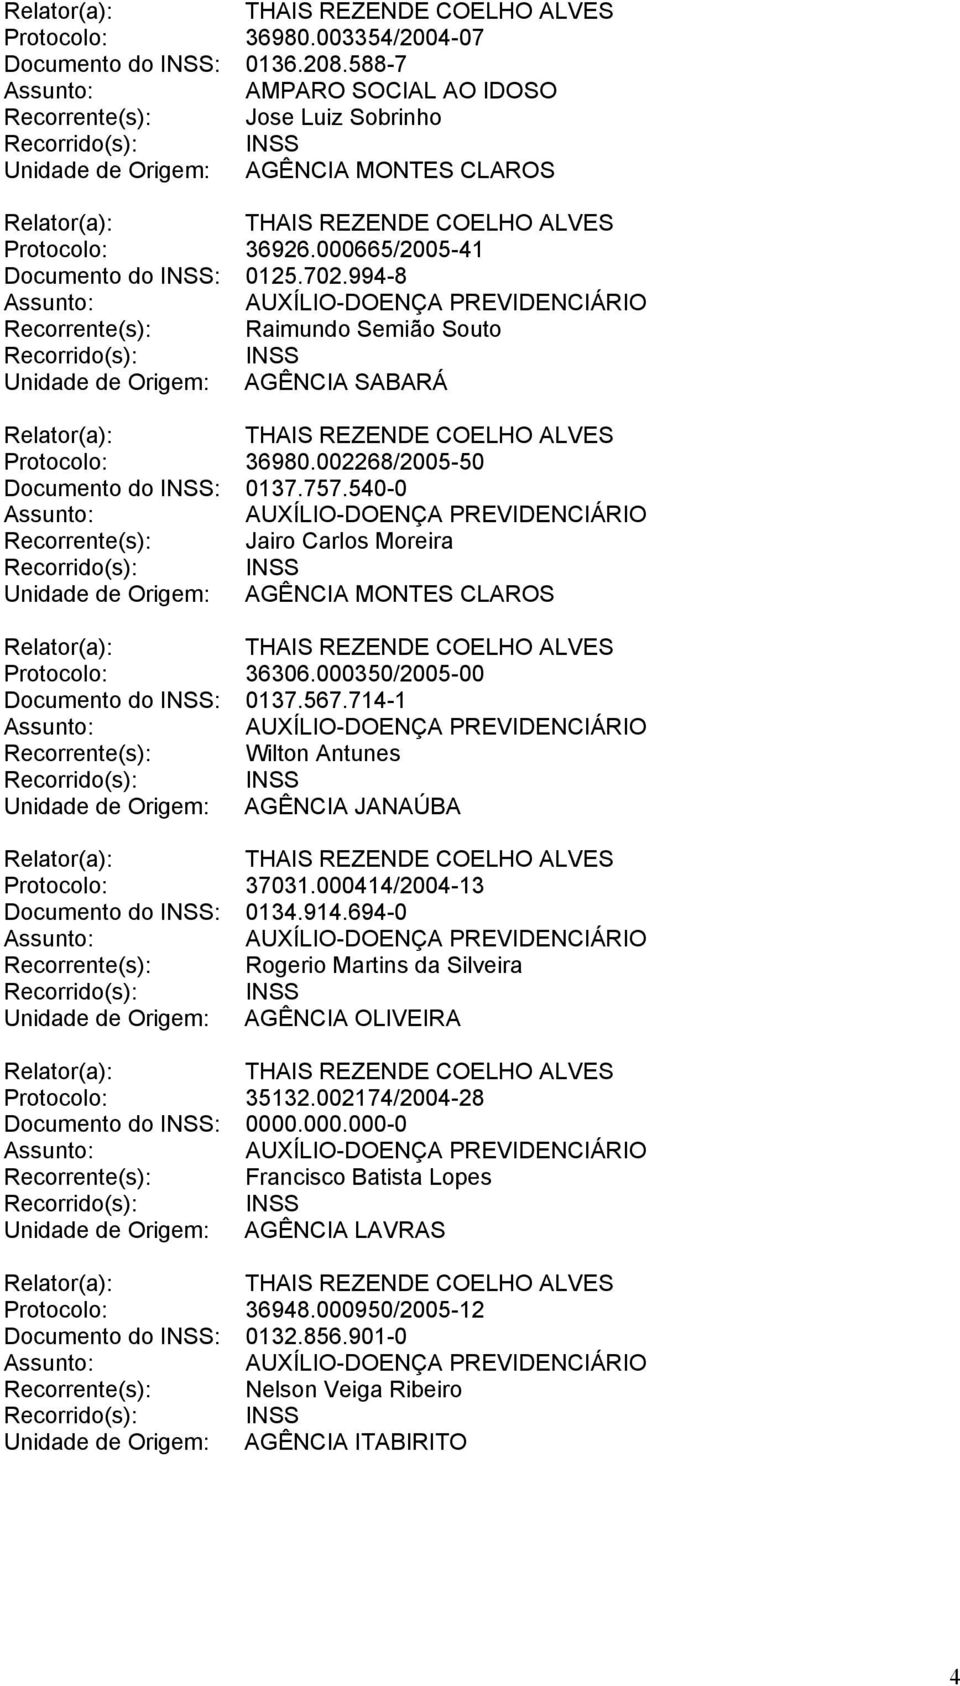 540-0 Recorrente(s): Jairo Carlos Moreira Unidade de Origem: AGÊNCIA MONTES CLAROS Protocolo: 36306.000350/2005-00 Documento do INSS: 0137.567.